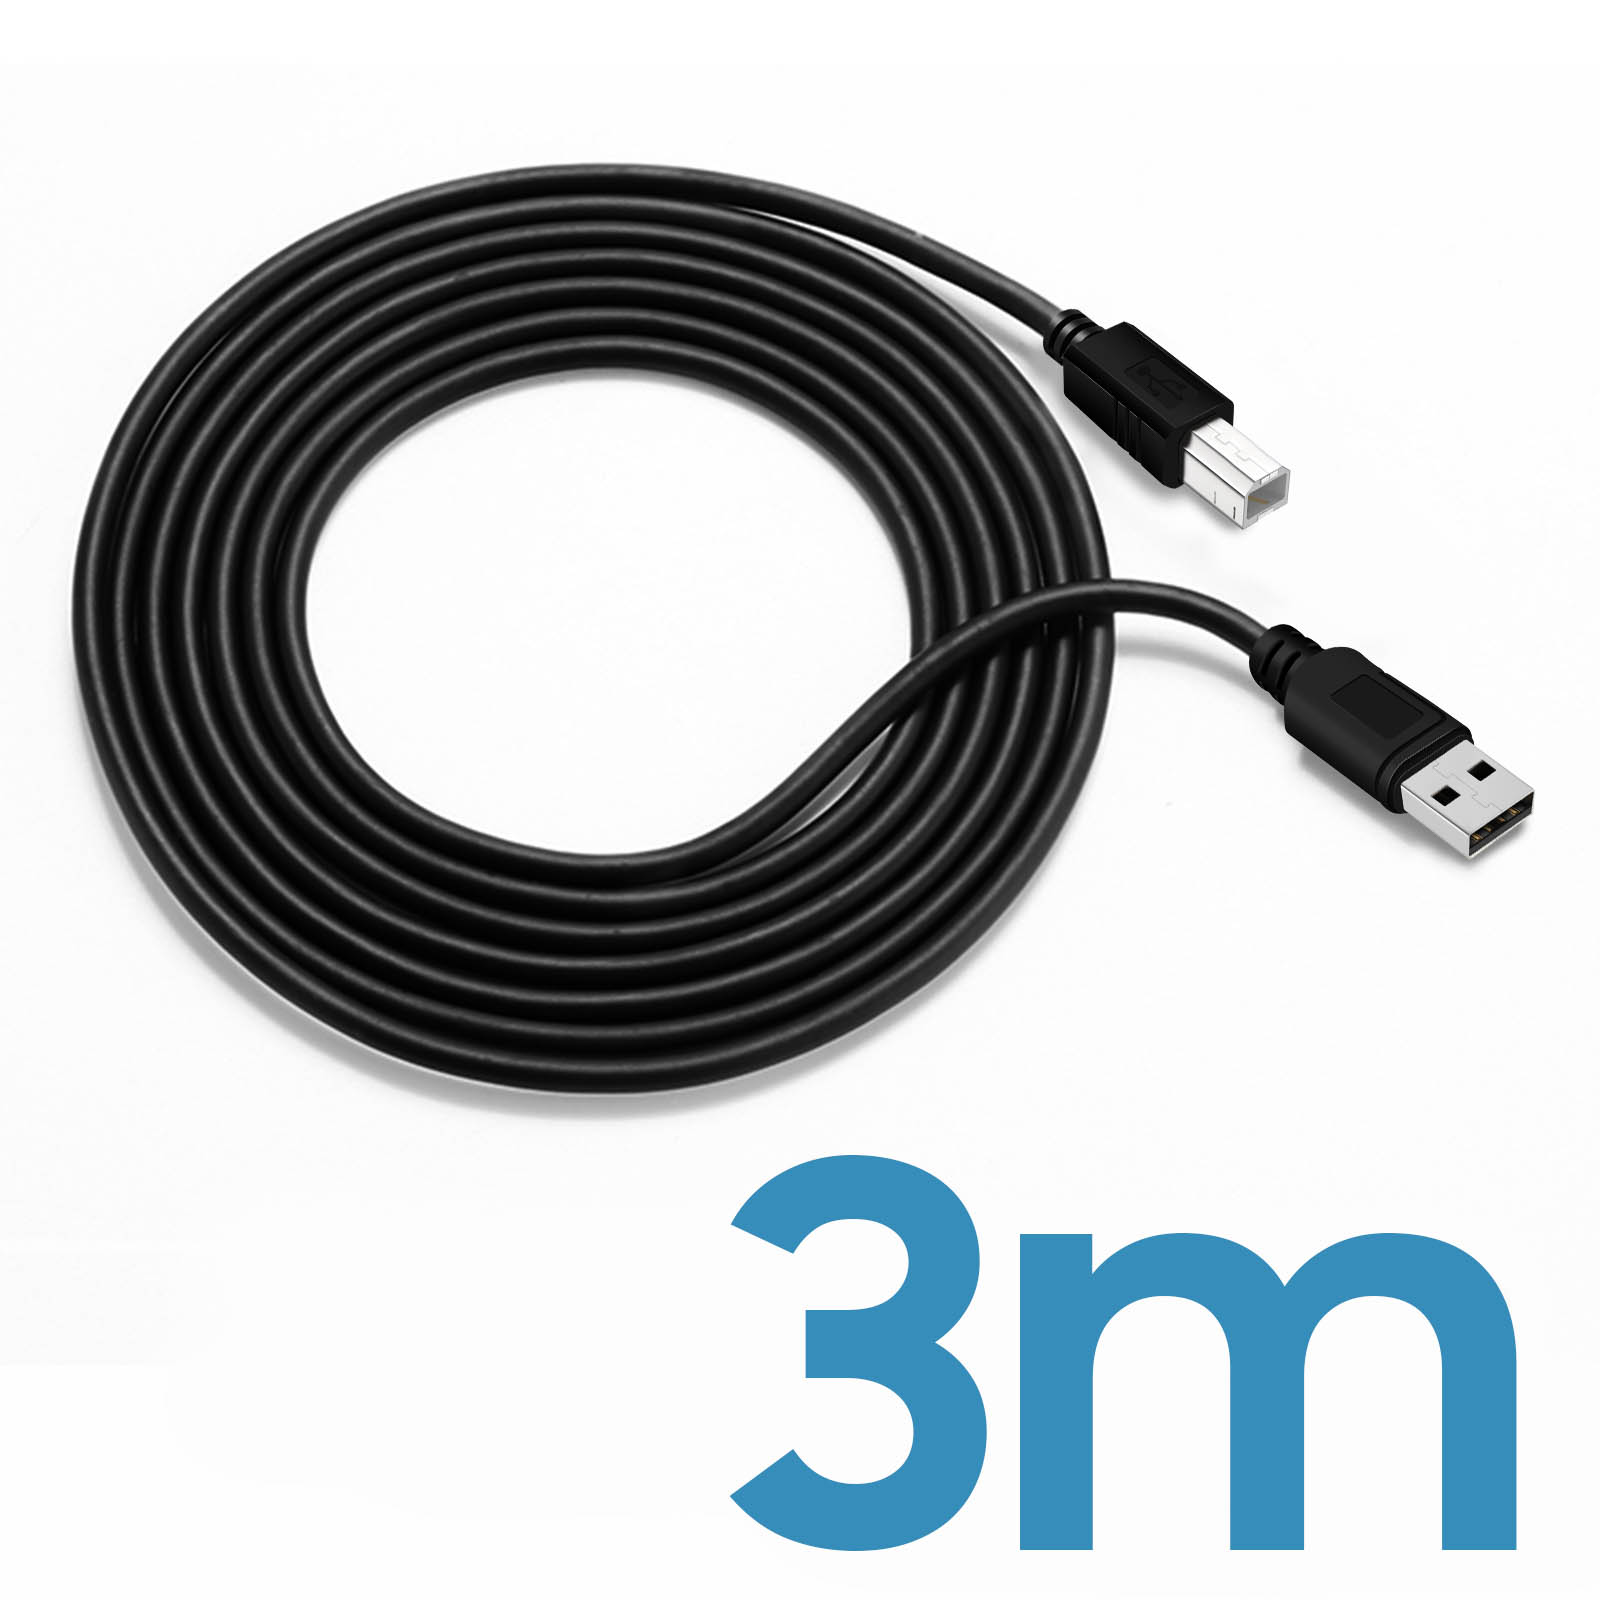 Sa Câble USB Pour Imprimante 3m - Noir - Prix pas cher